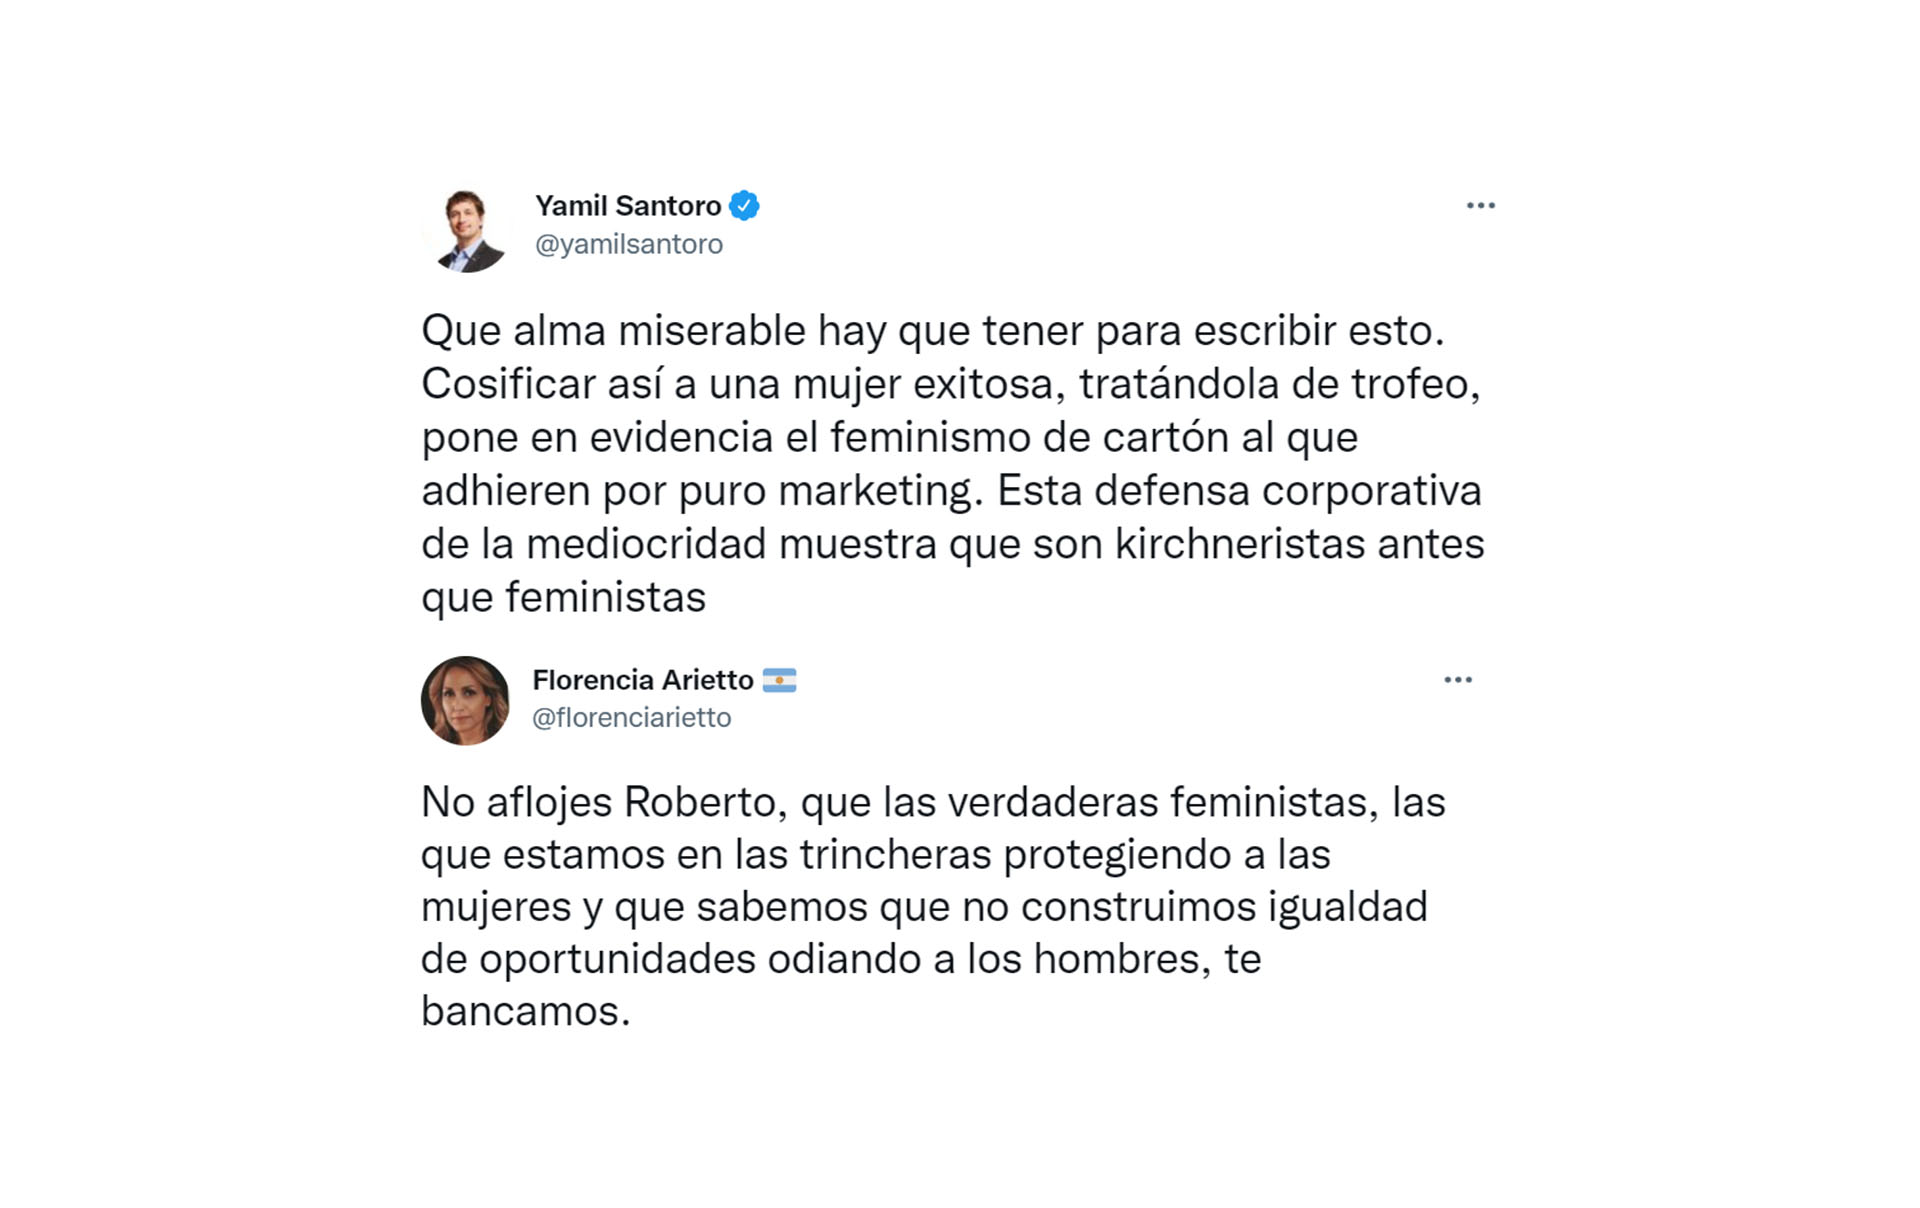 Los mensajes de apoyo de Yamil Santoro y Florencia Arietto a Roberto García Moritán